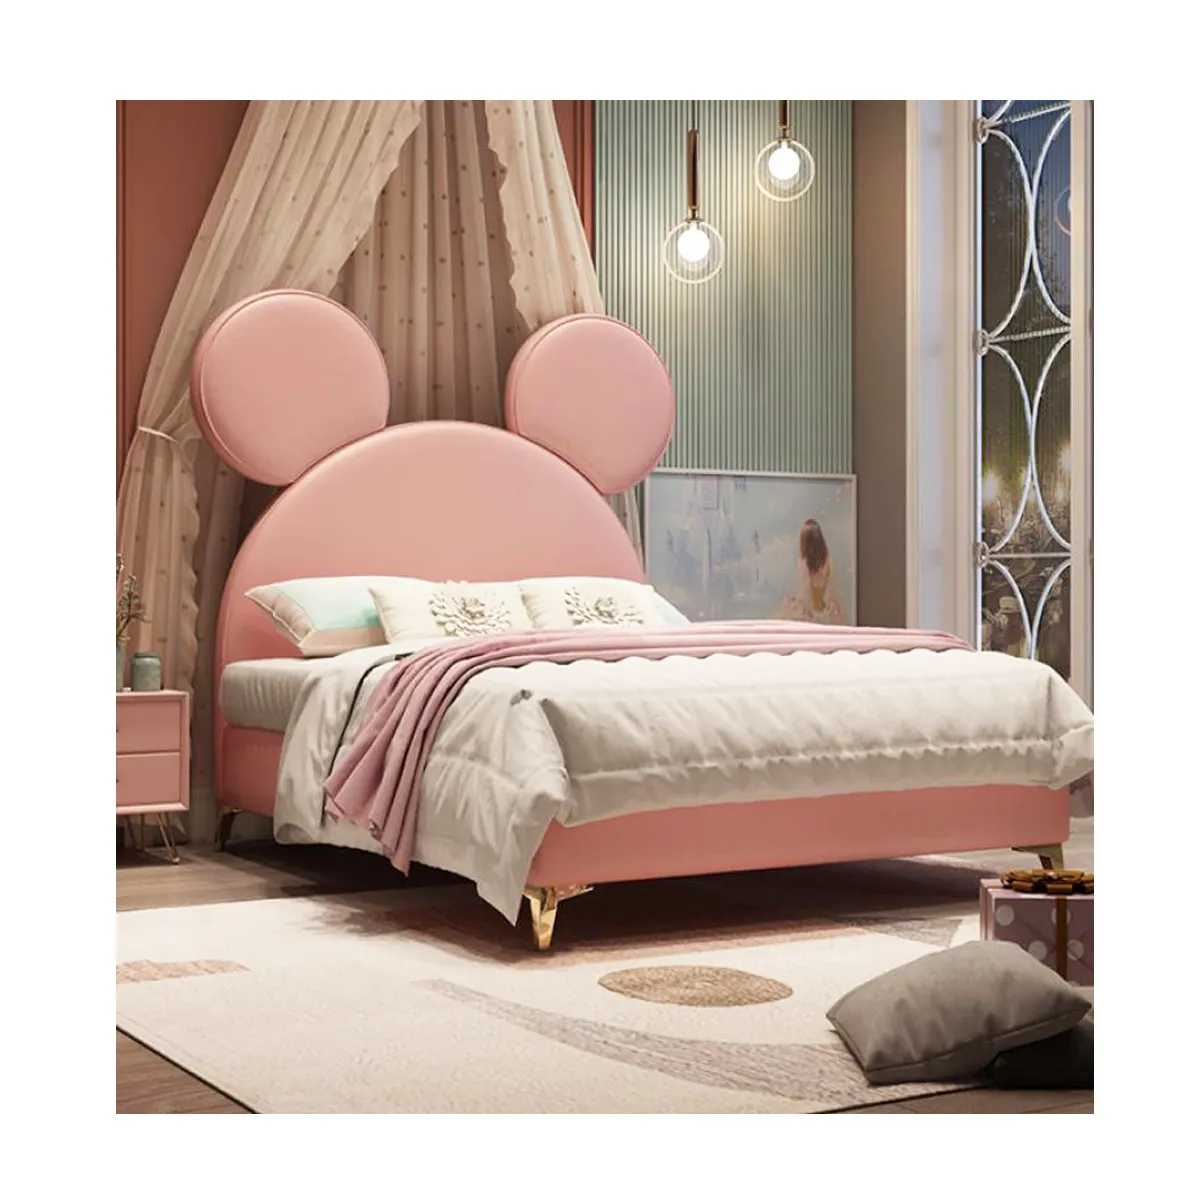 Cama de quarto infantil do mickey, camas estilo adoráveis para meninas e meninos